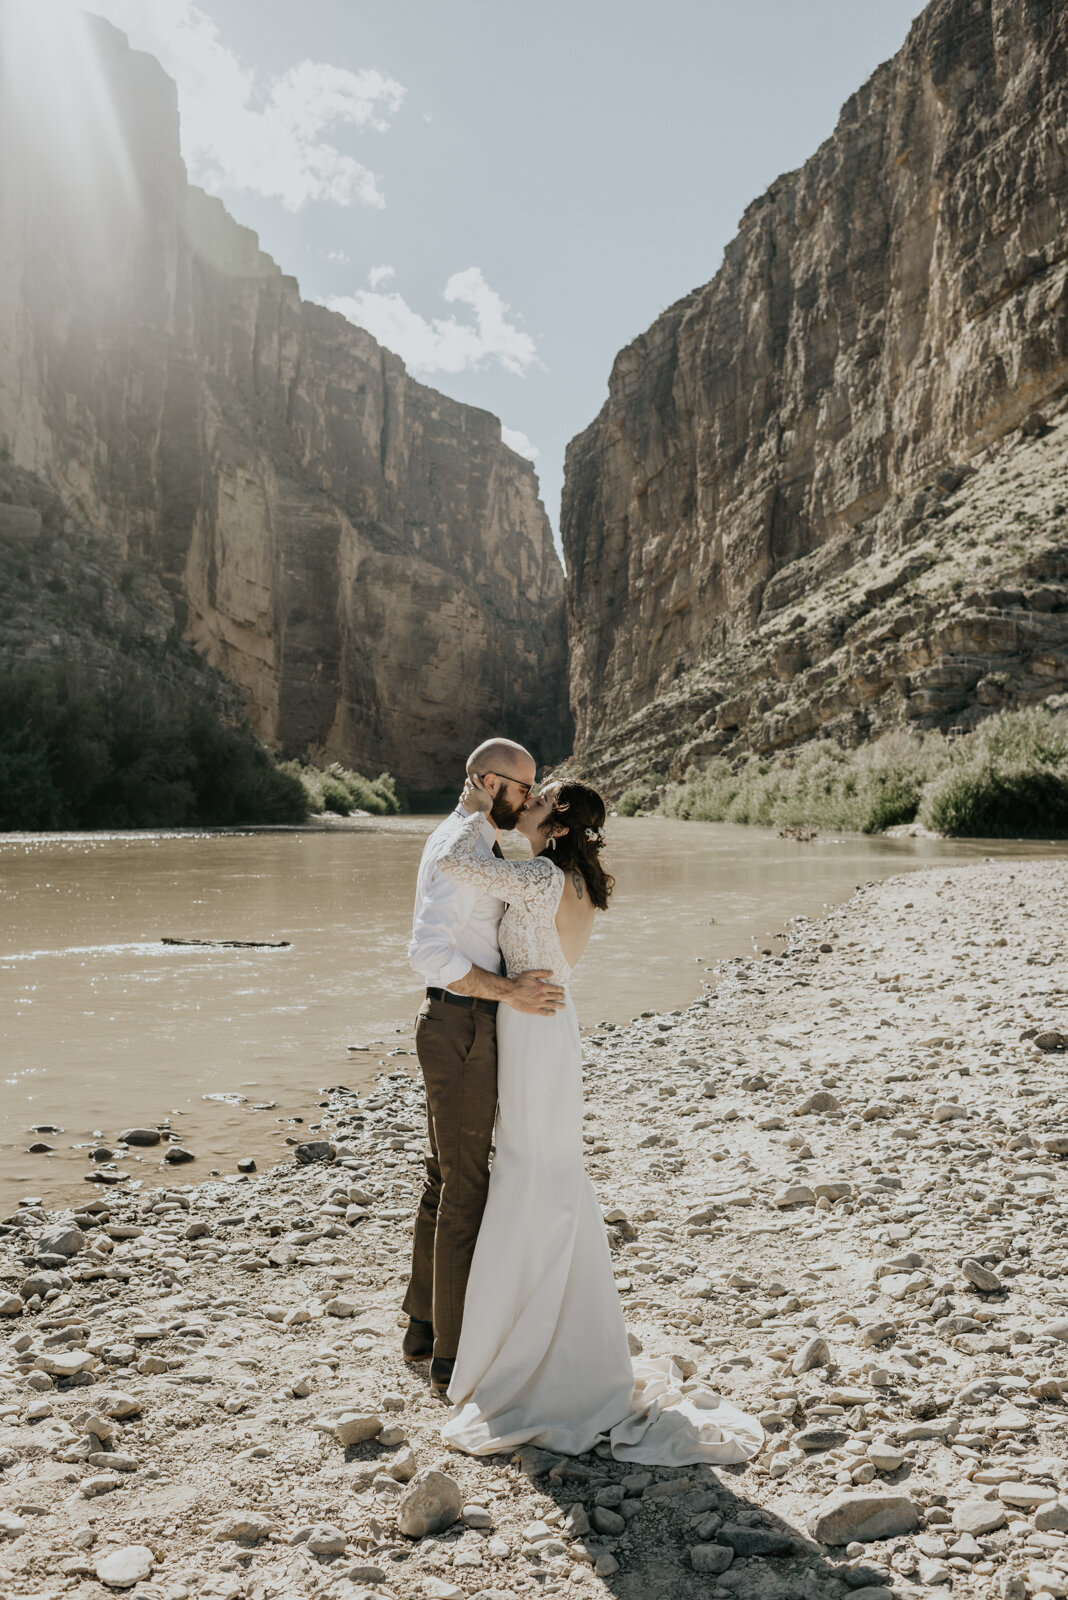  Big Bed National Park, Santa Elena Canyon Wedding Photography